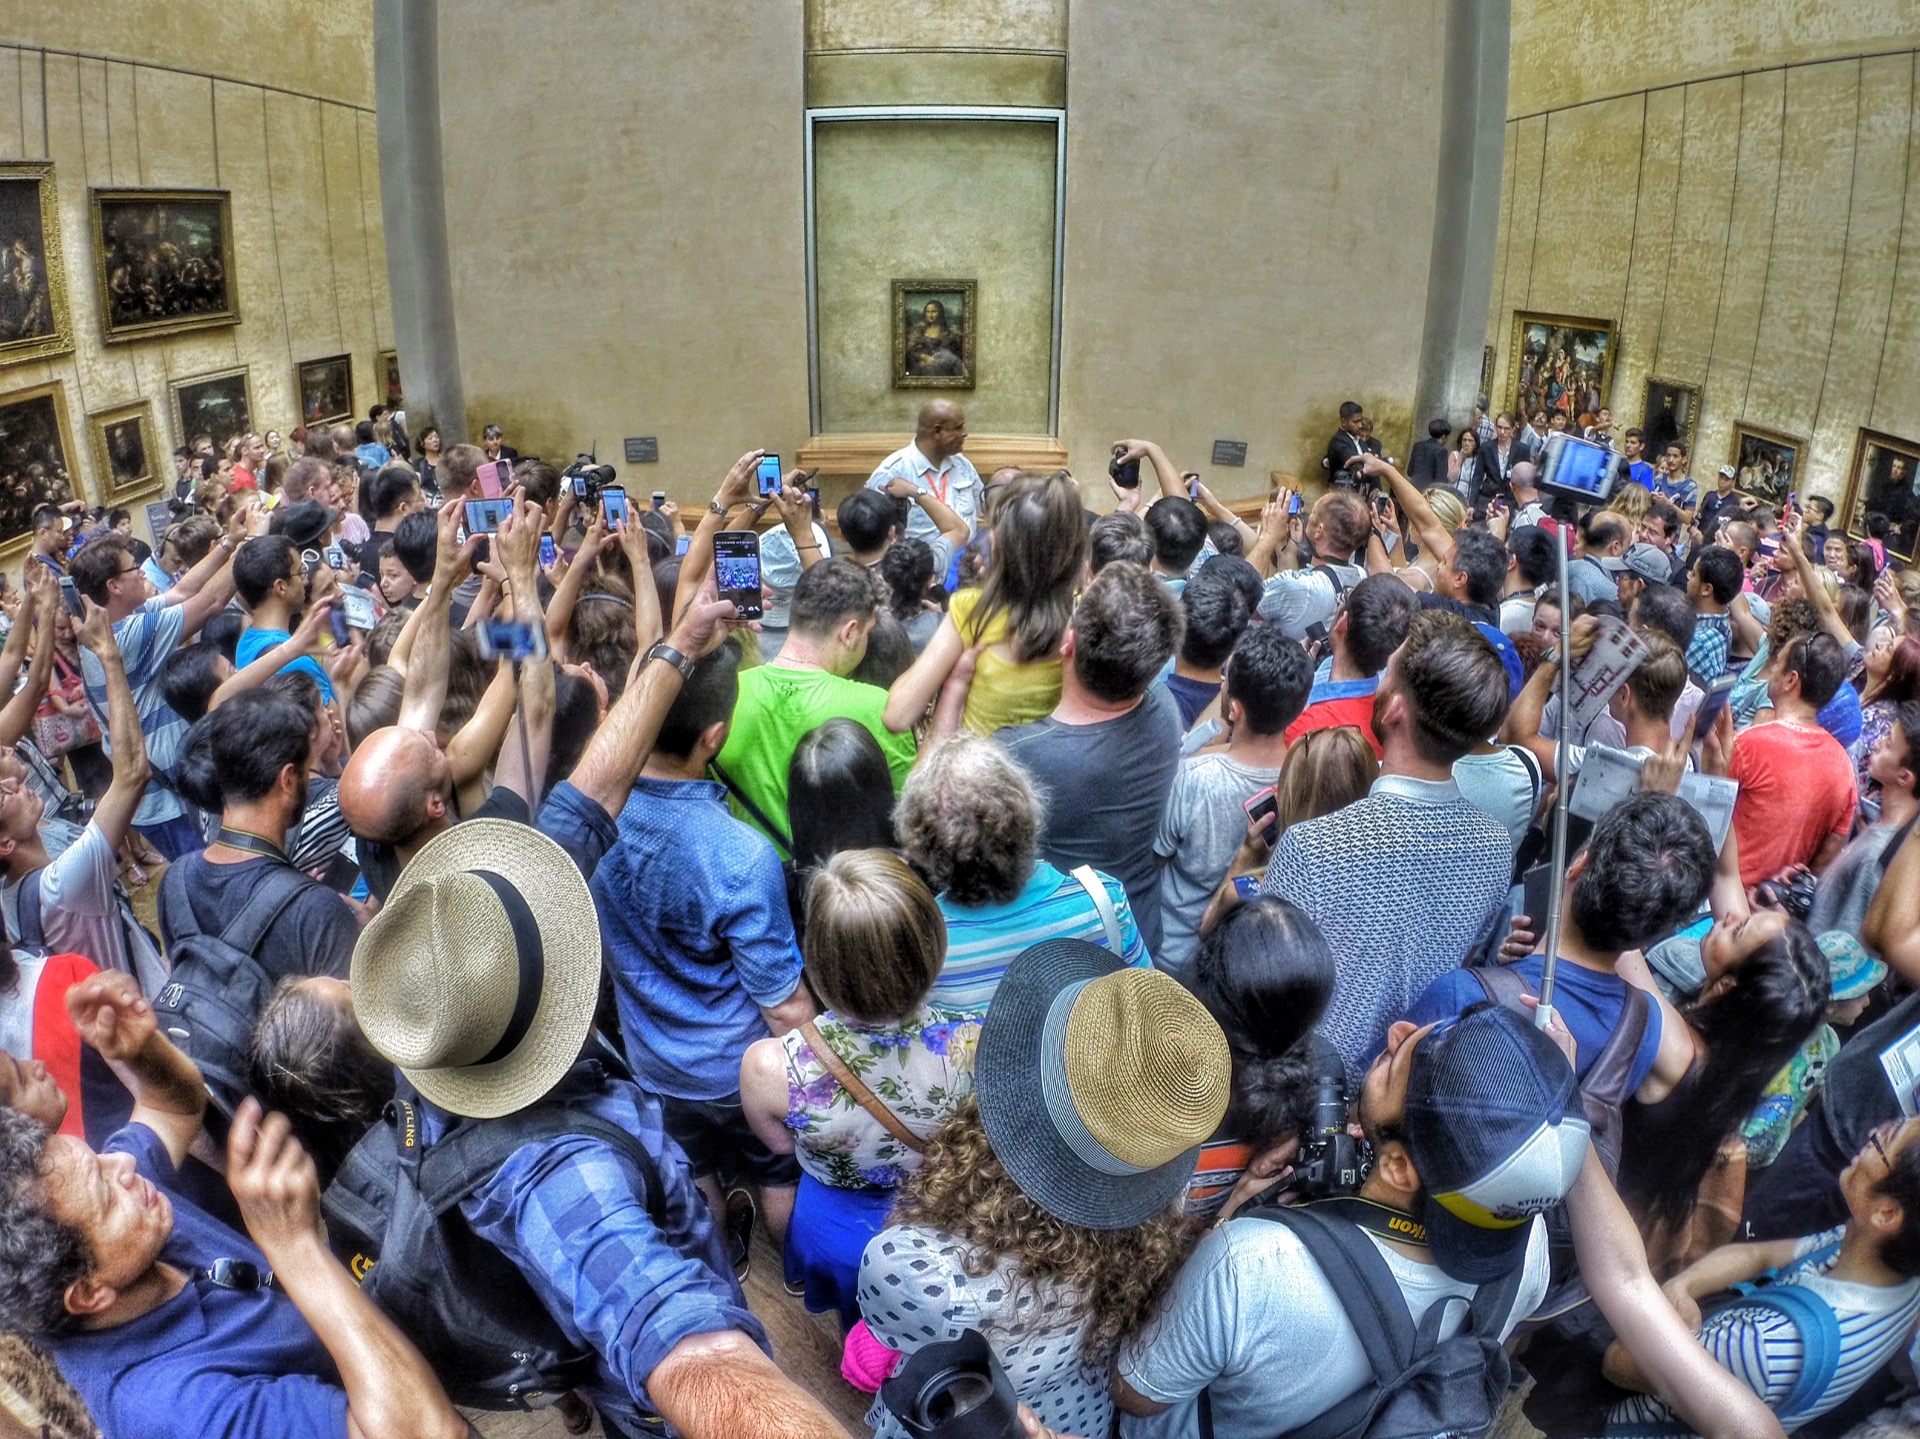 La foule devant la Joconde, le tableau de Léonard de Vinci. Palais du Louvre, Paris. © Max Fercondini, Wikimedia Commons, CC by-sa 4.0